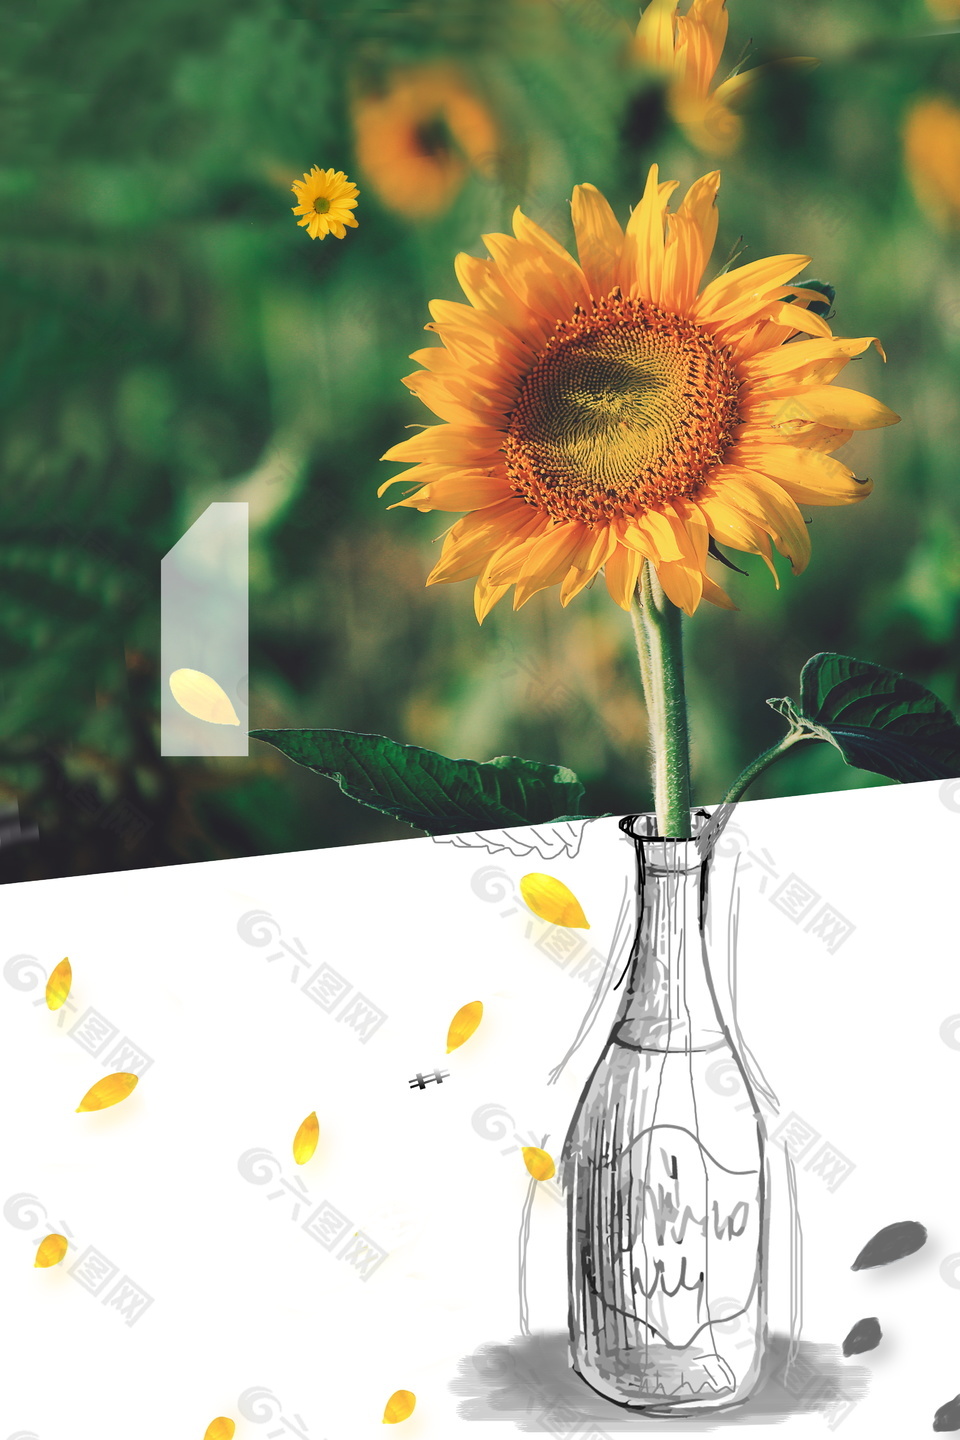 夏季向日葵插花广告背景素材